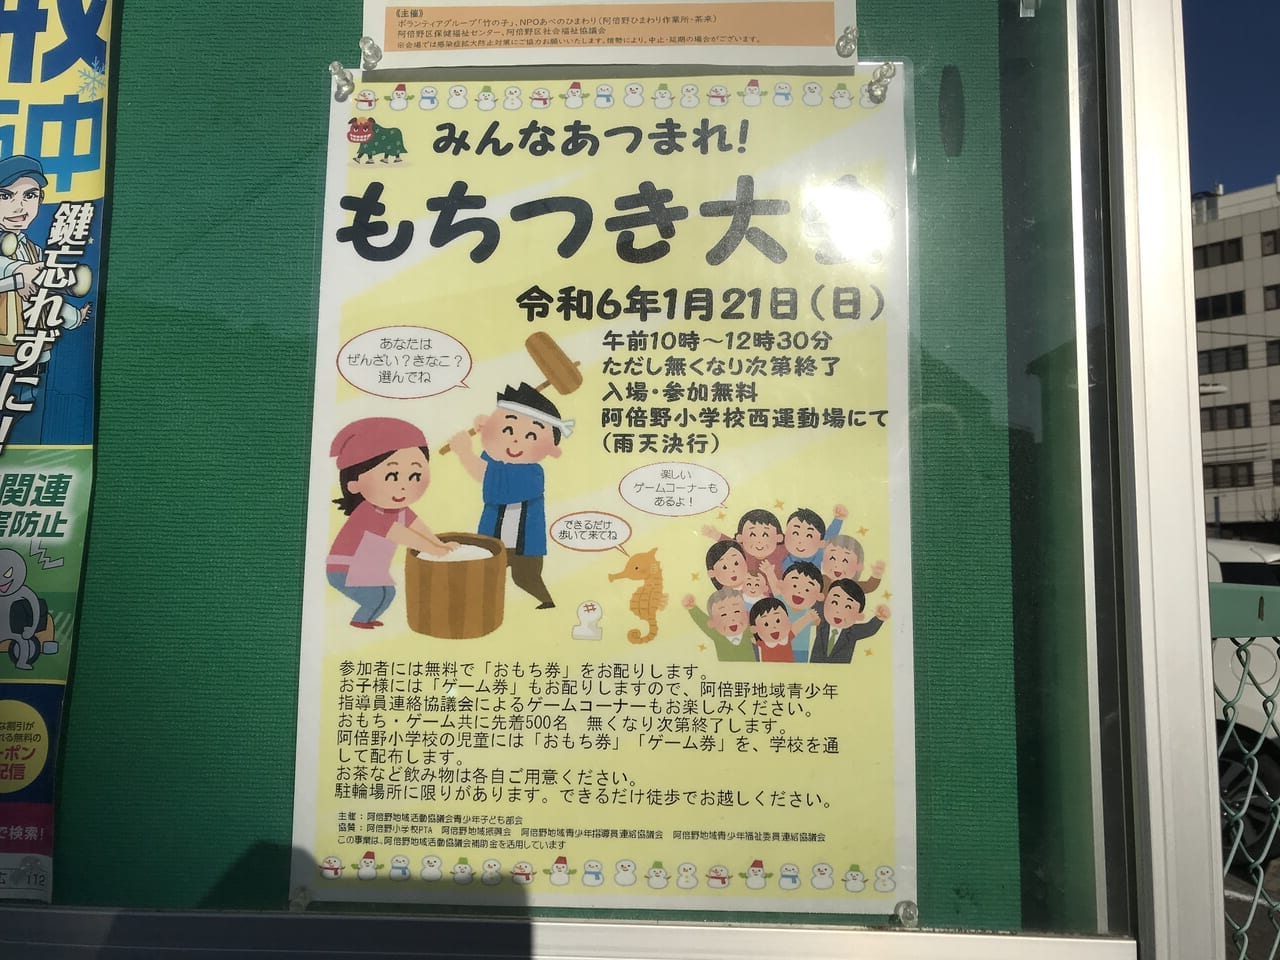 阿倍野小学校のもちつき大会のポスター